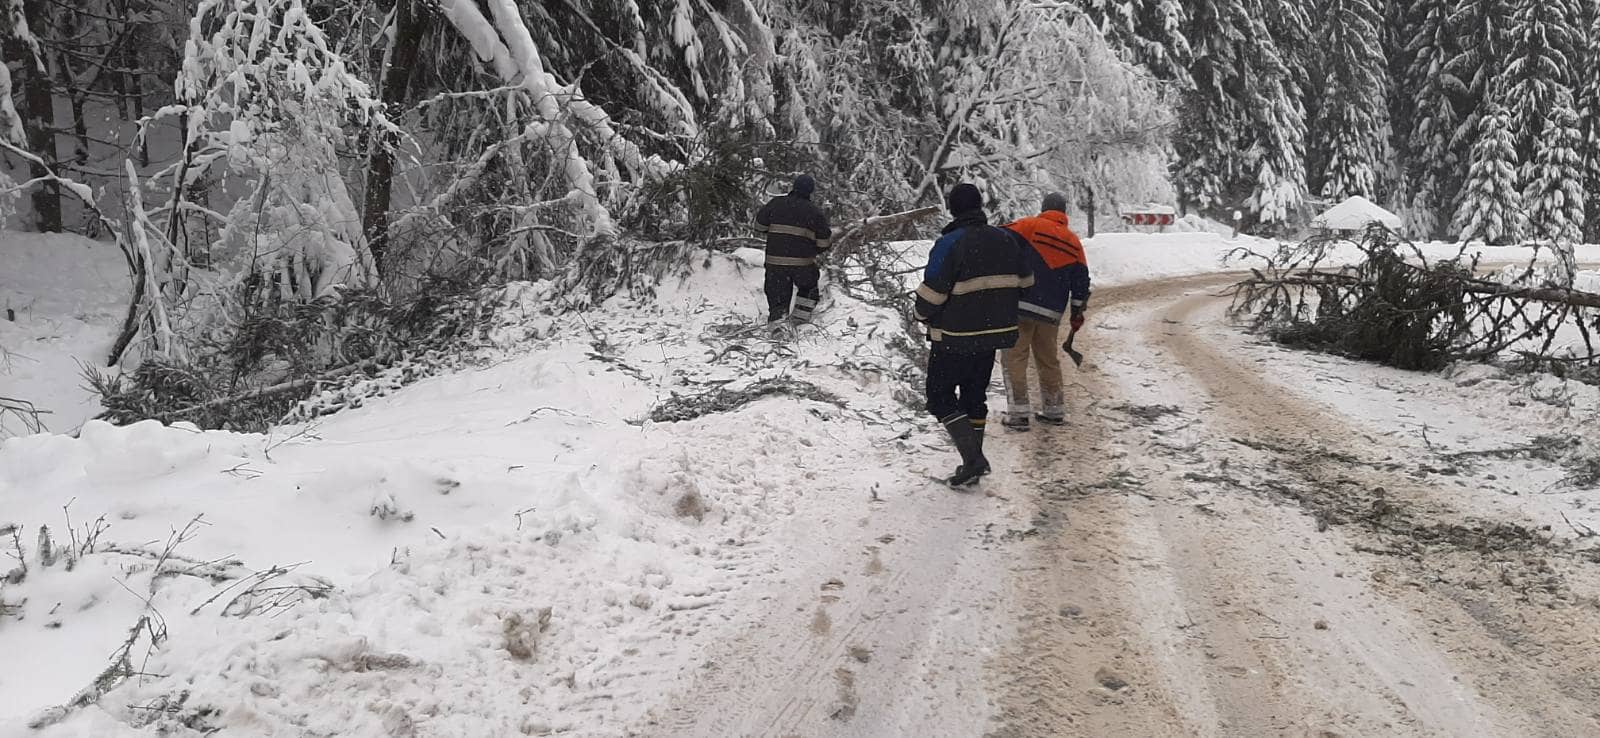 Сёла без света и падающие деревья: В Закарпатье людям буквально помогали вернуть нормальные условия жизни